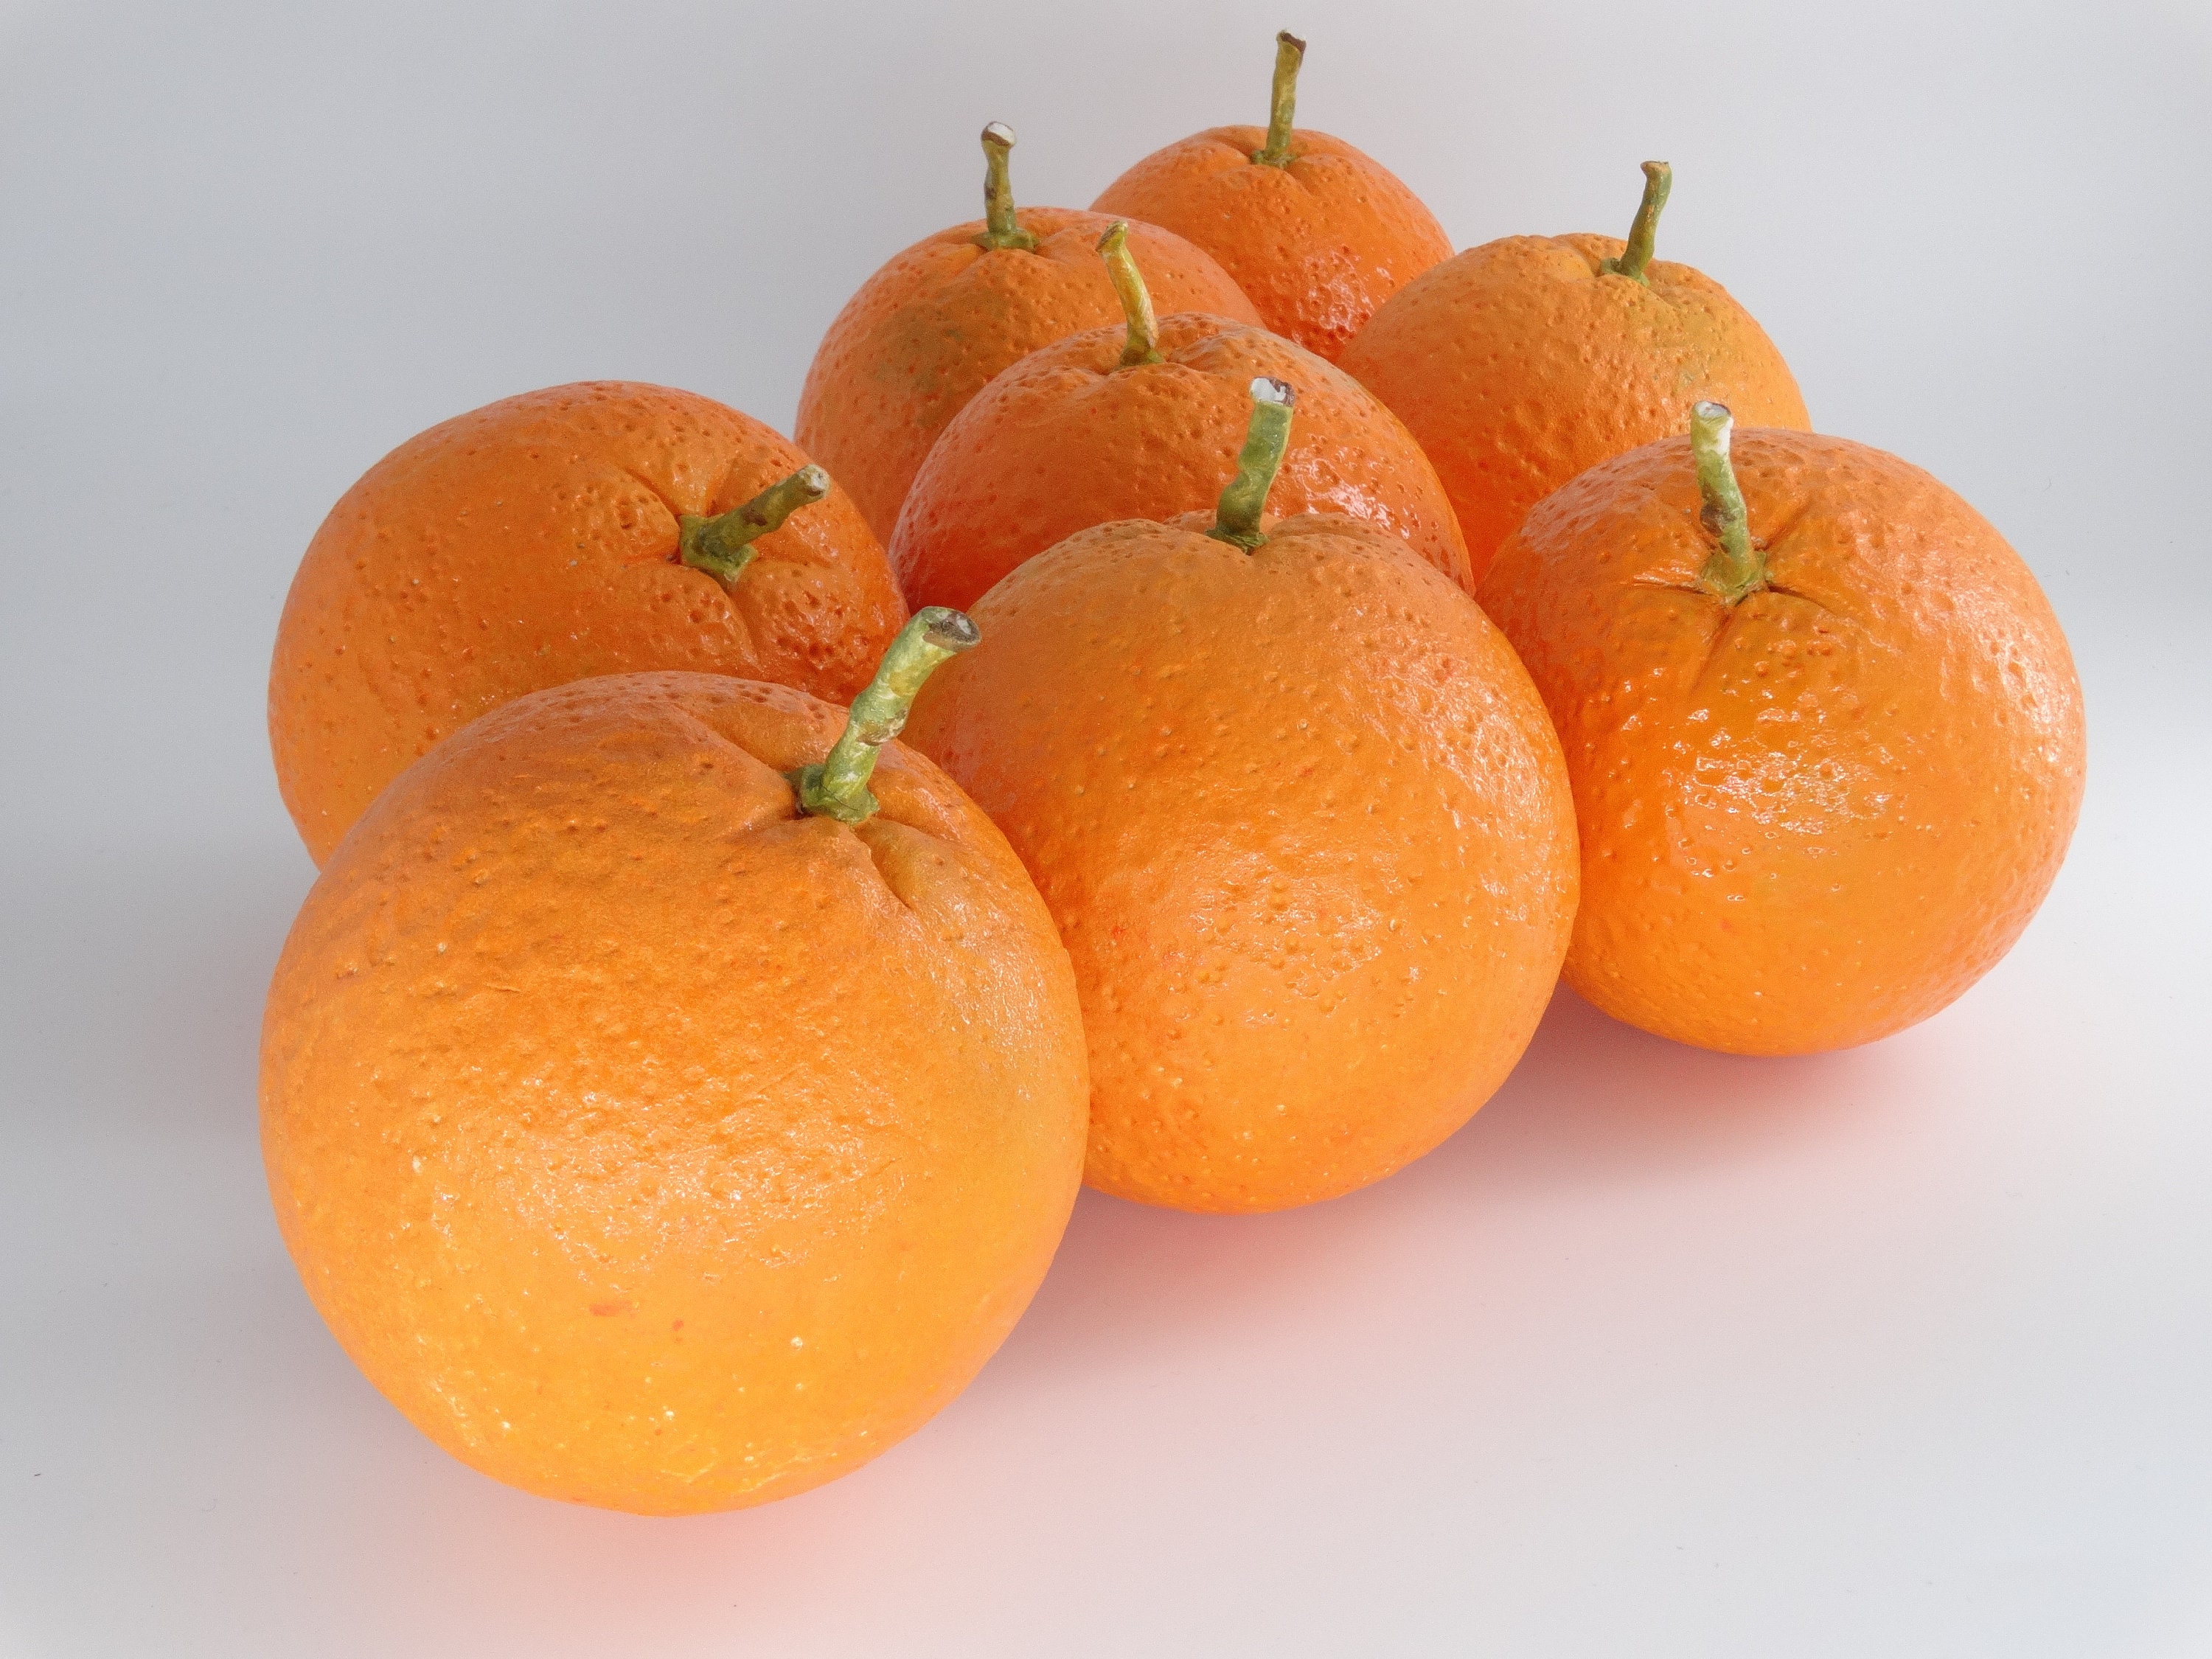 1pc Artificial Orange, Vivid Faux Fruit For Decoration, Home